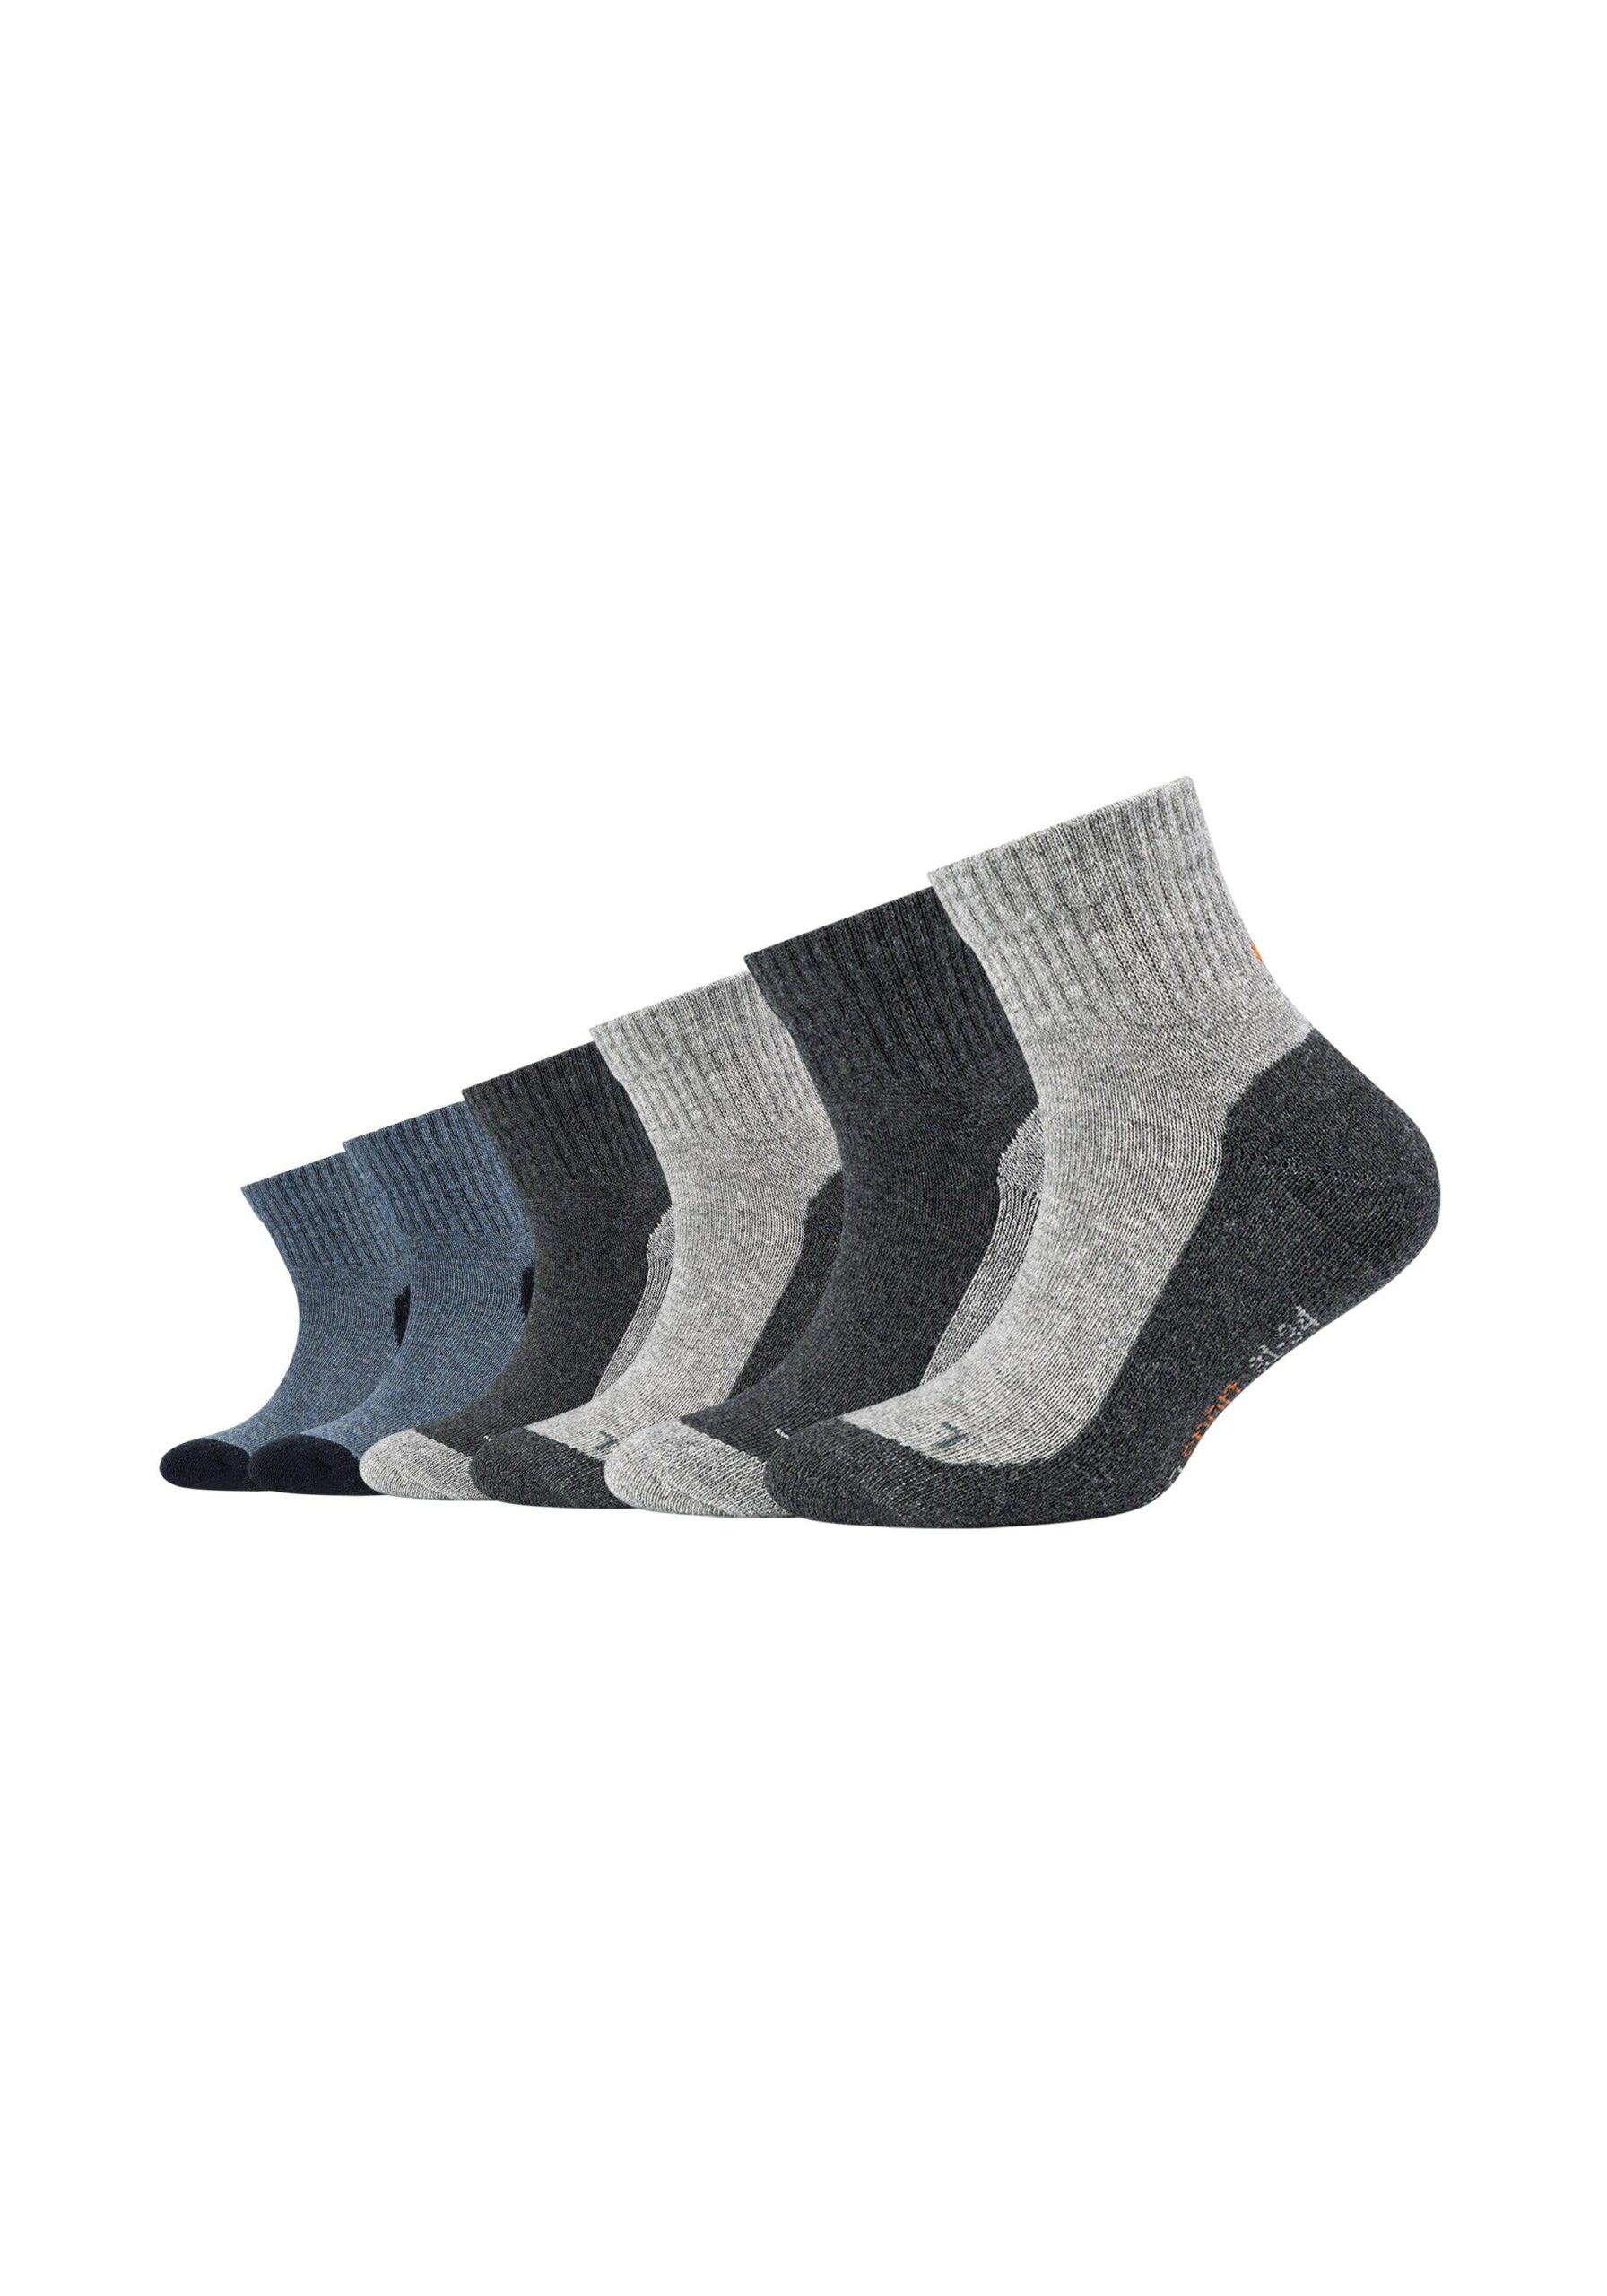 Strumpfhosen Socken, Strümpfe & Kinder kaufen online